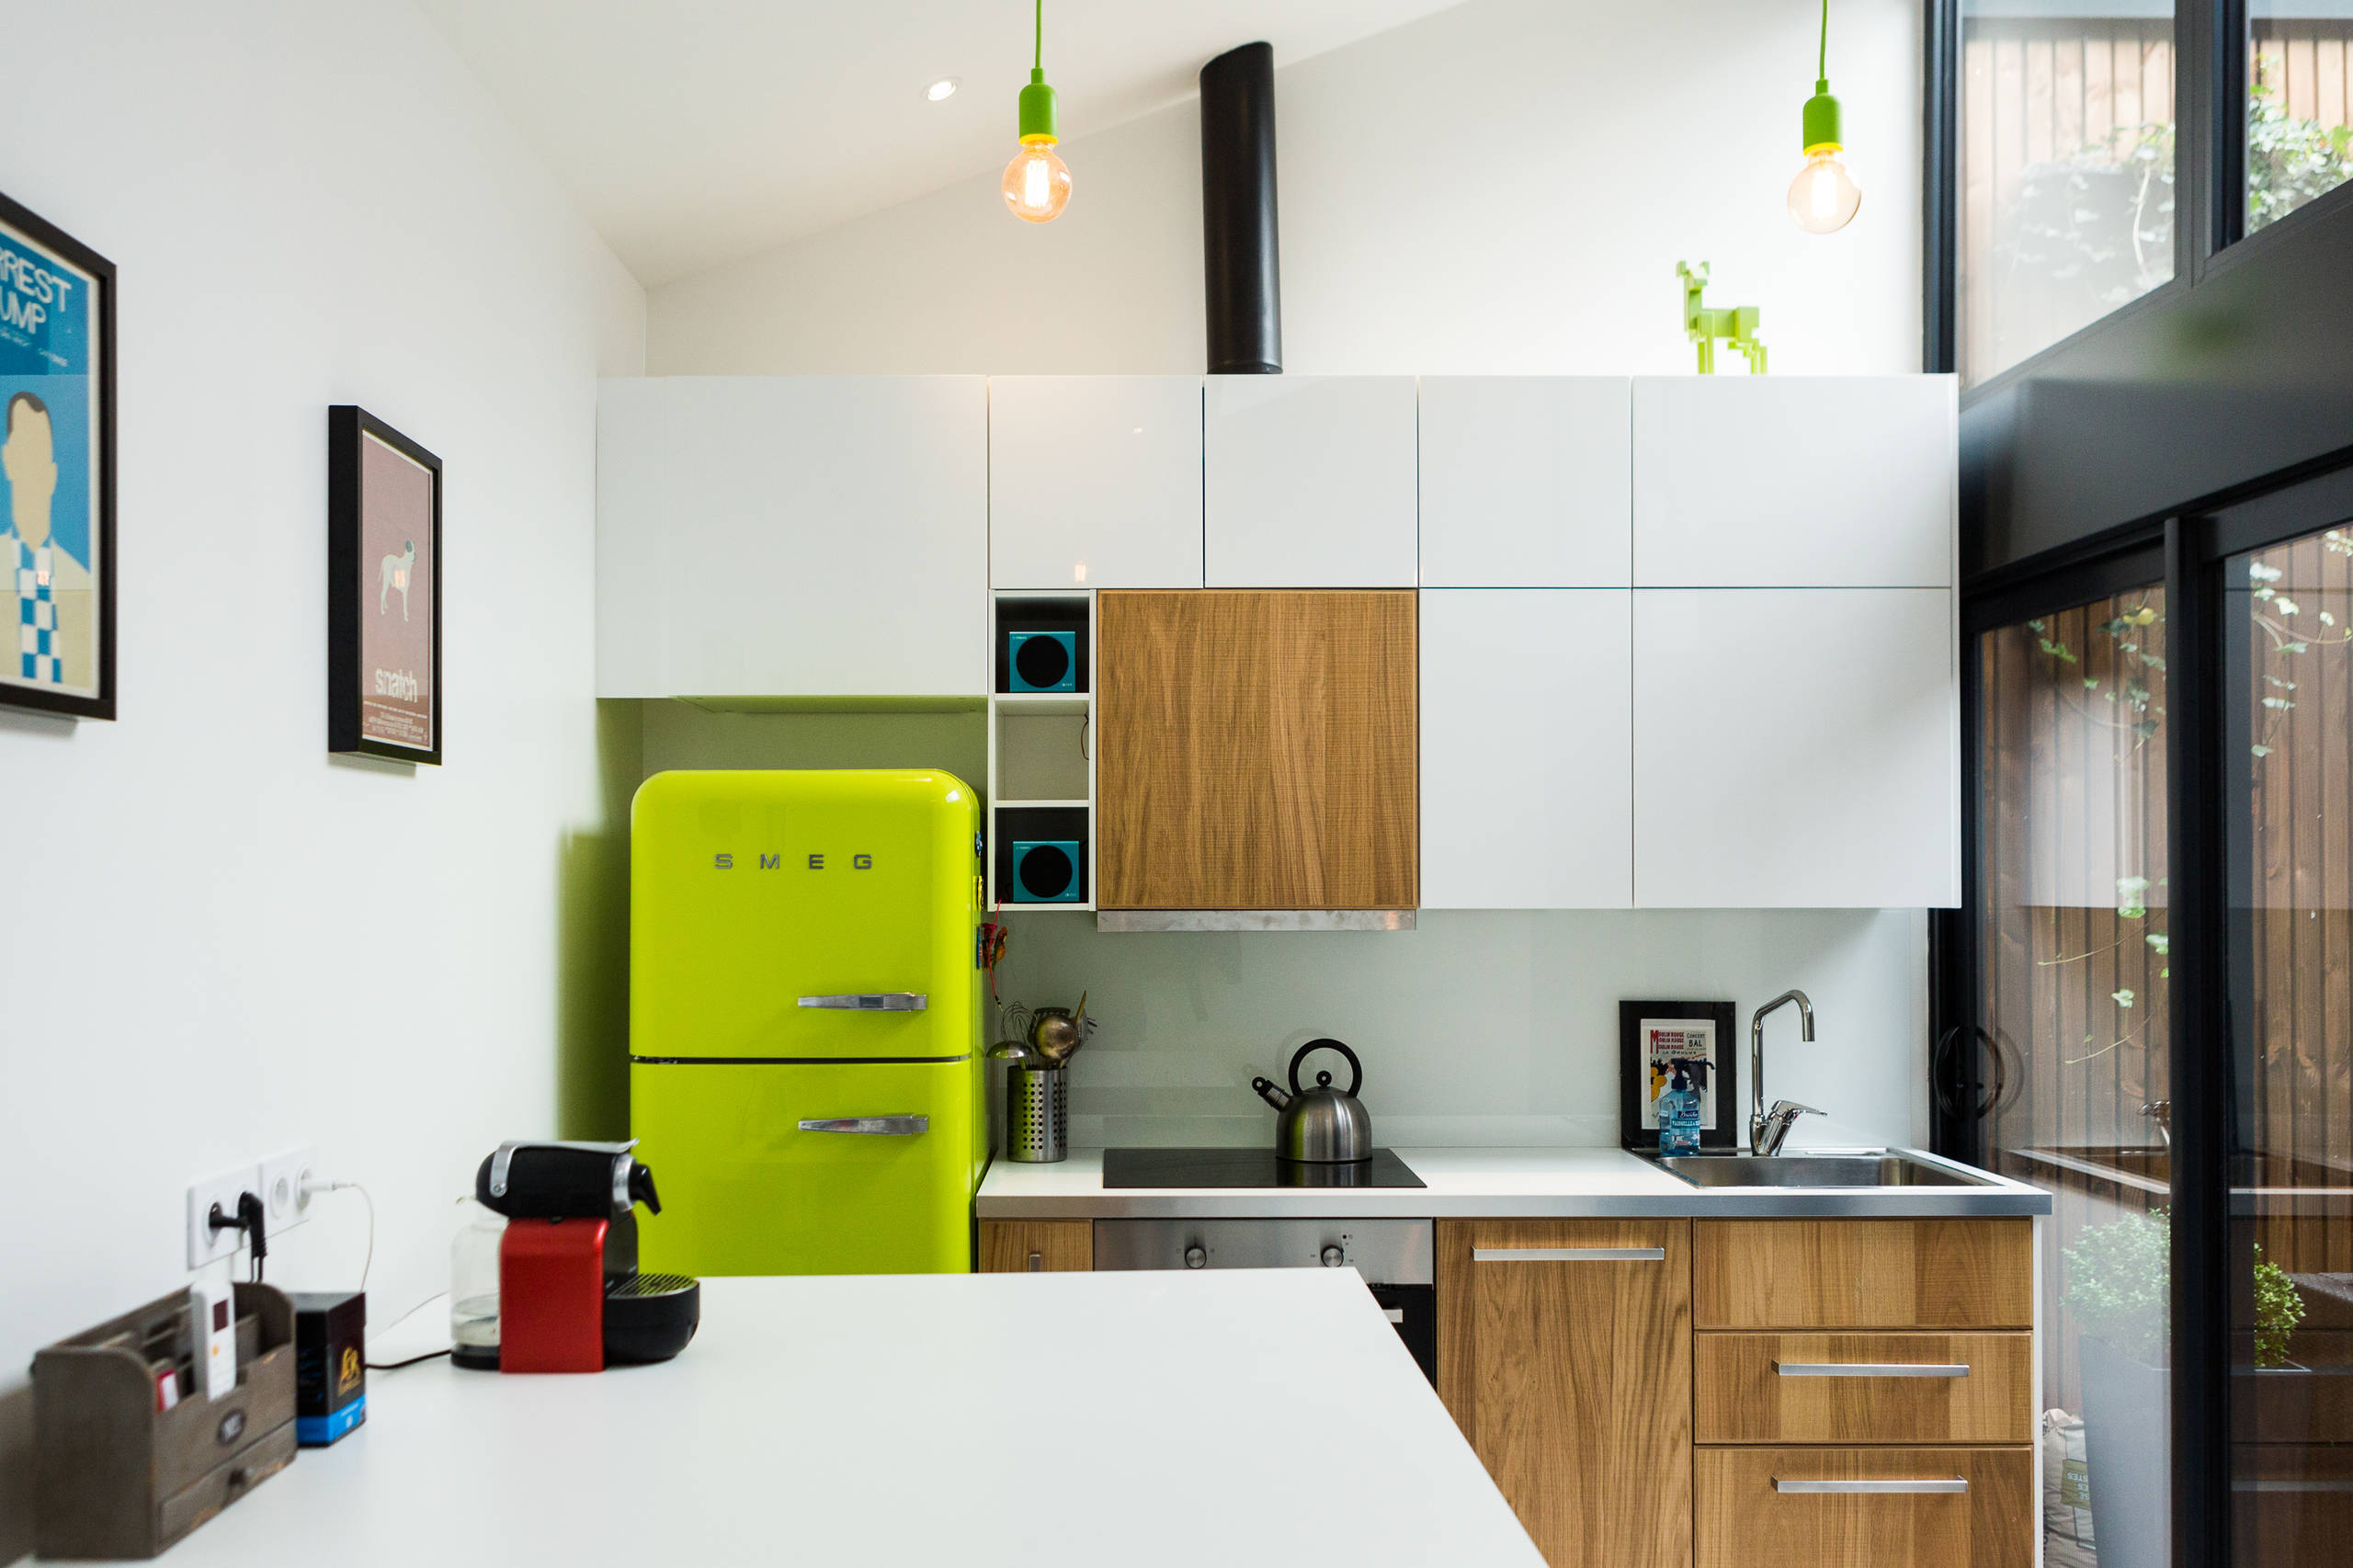 Дизайн кухни 9 кв м - реальных фото современного интерьера и расстановки мебели